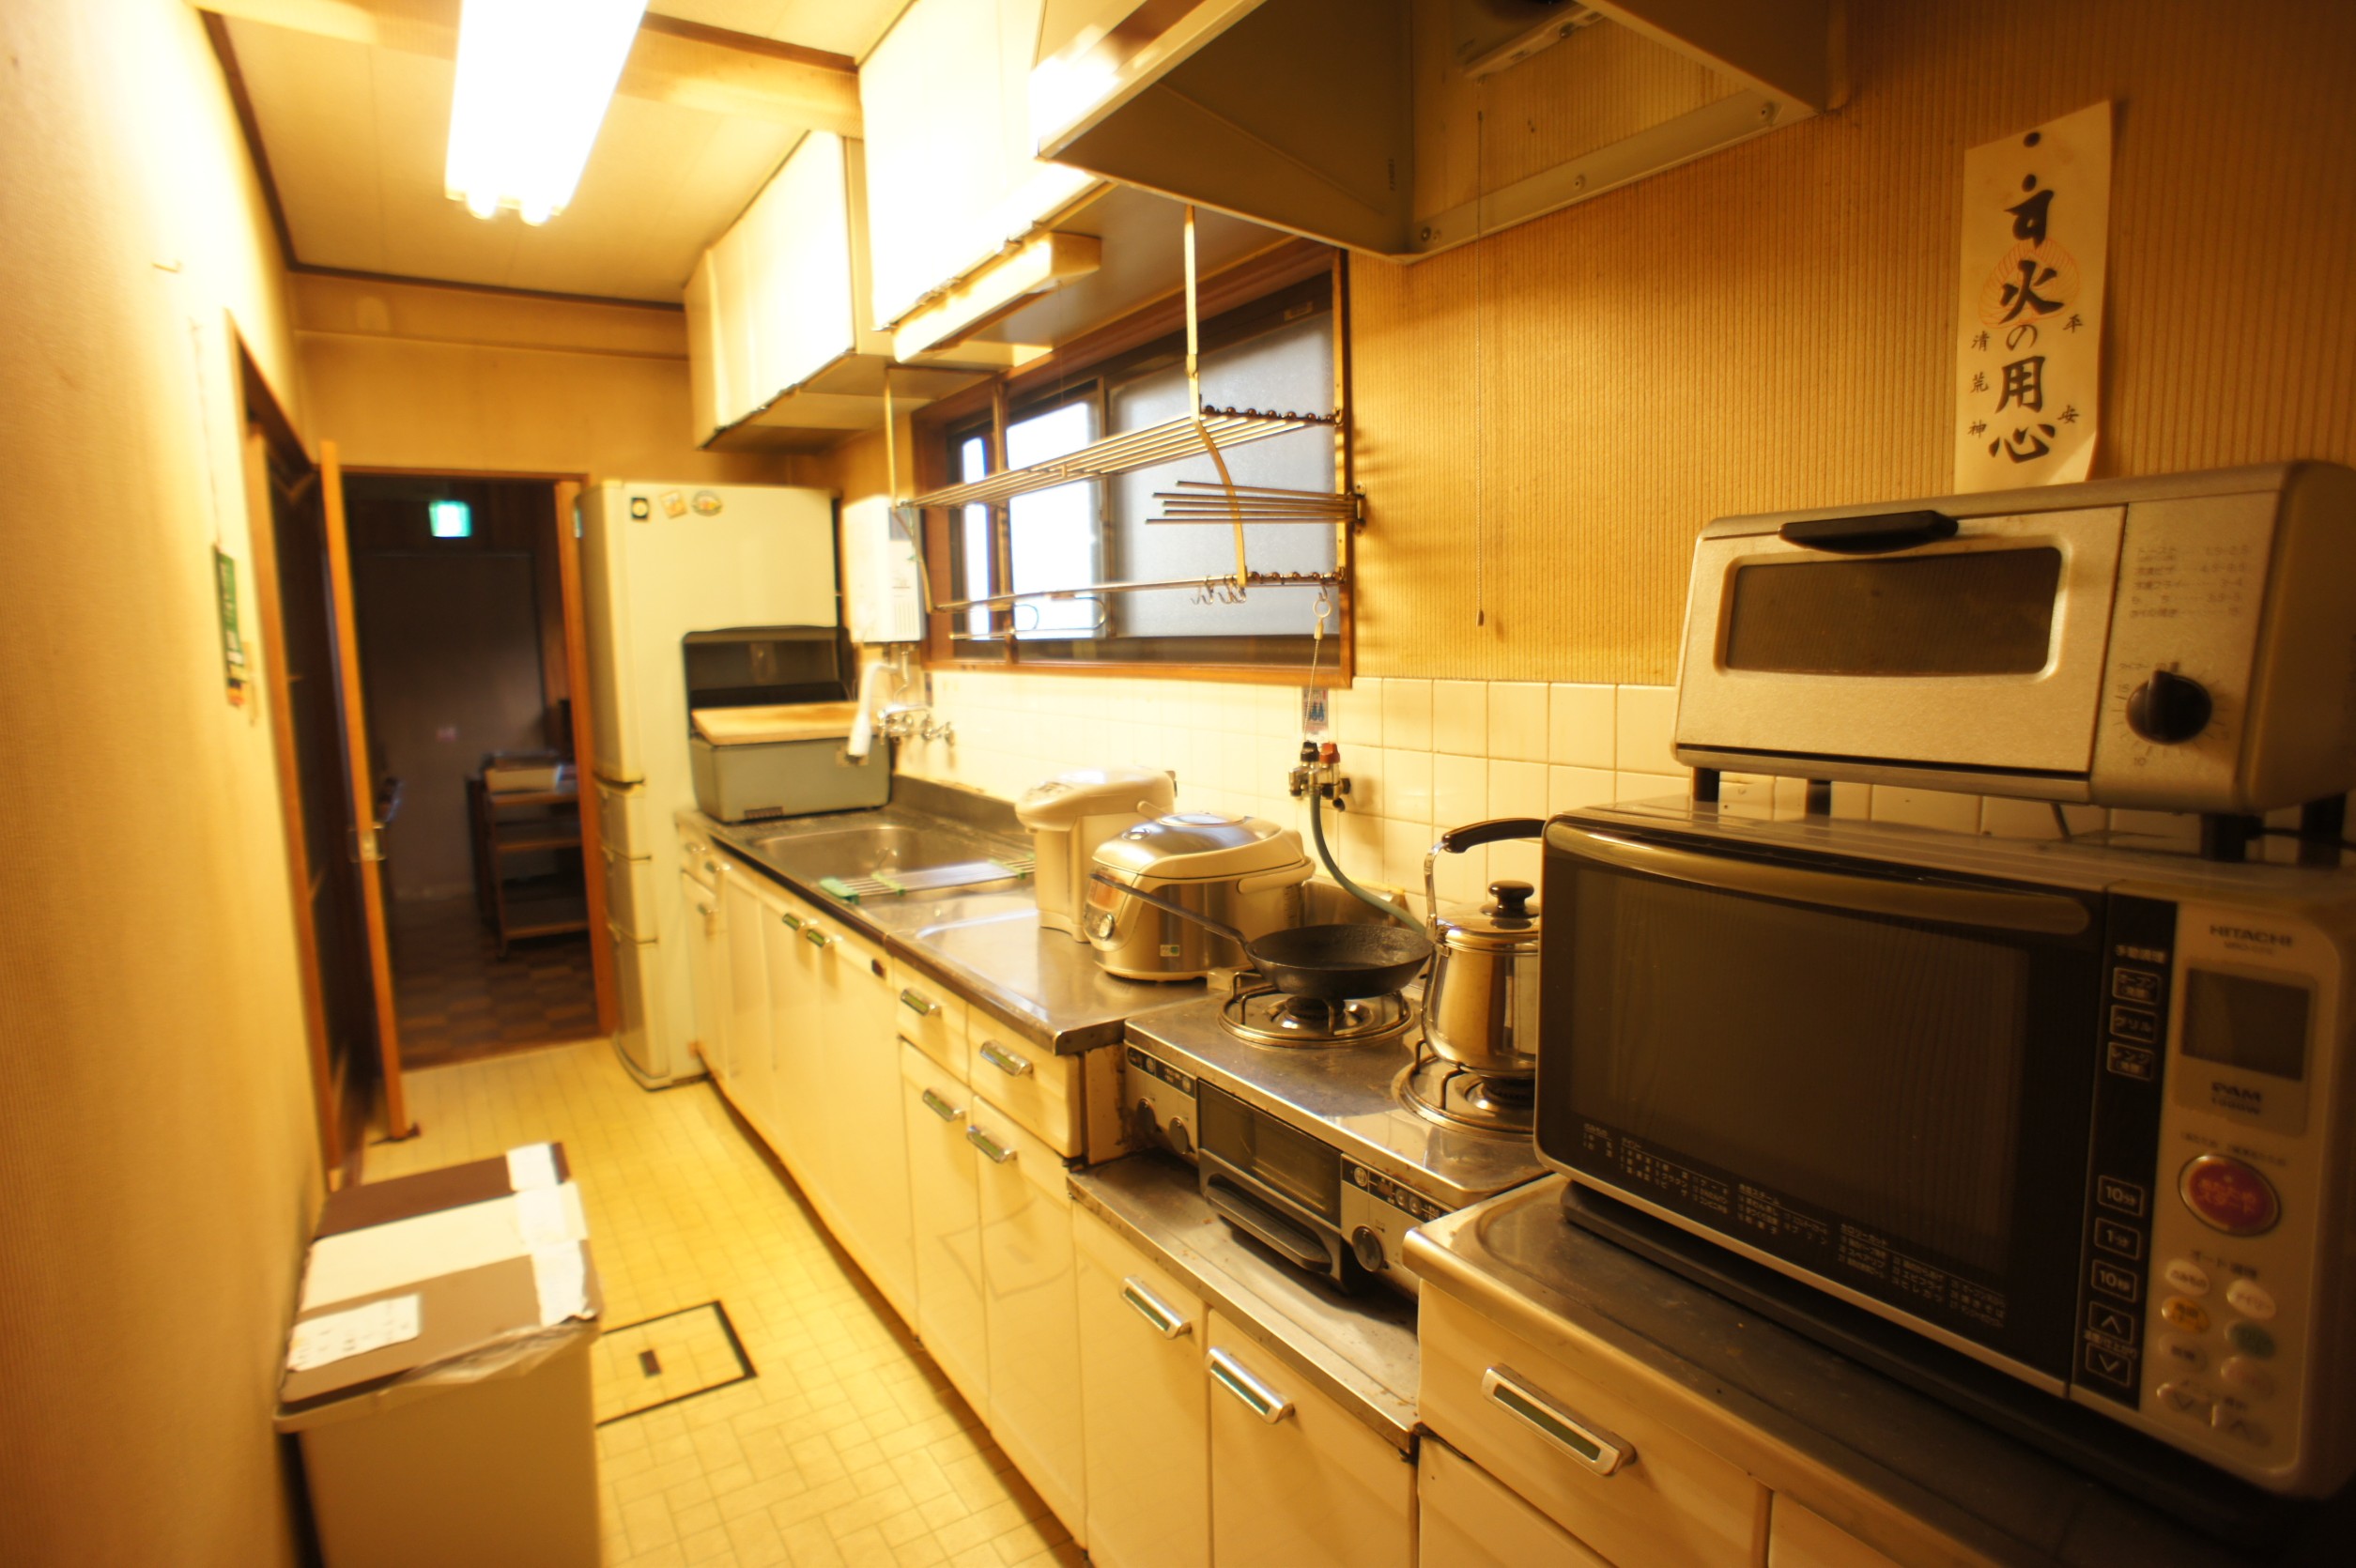 ＜共有キッチン＞様々な調理器具や食器類が完備されています。